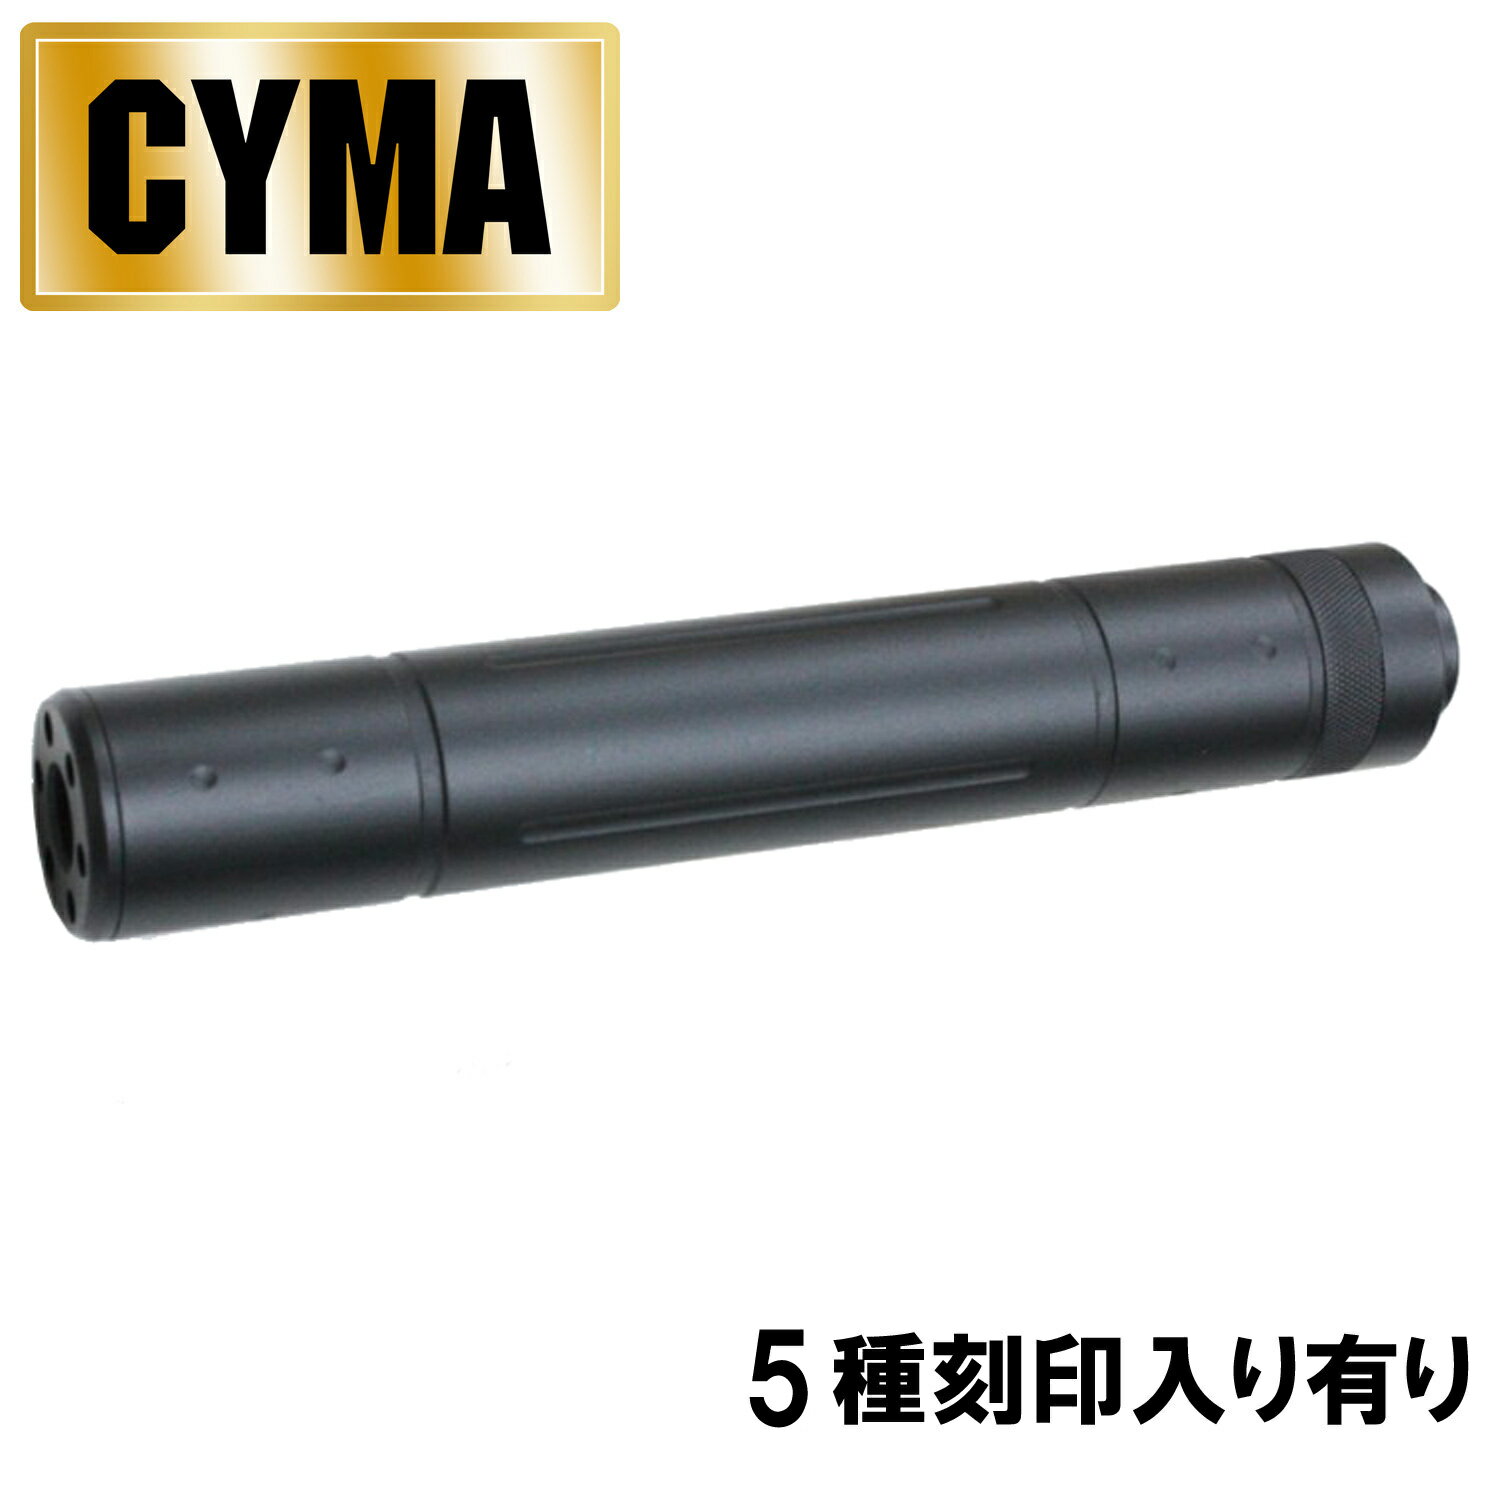 【他店対抗 最安値へ挑戦!!】CYMA φ32mm 195mm サイレンサー